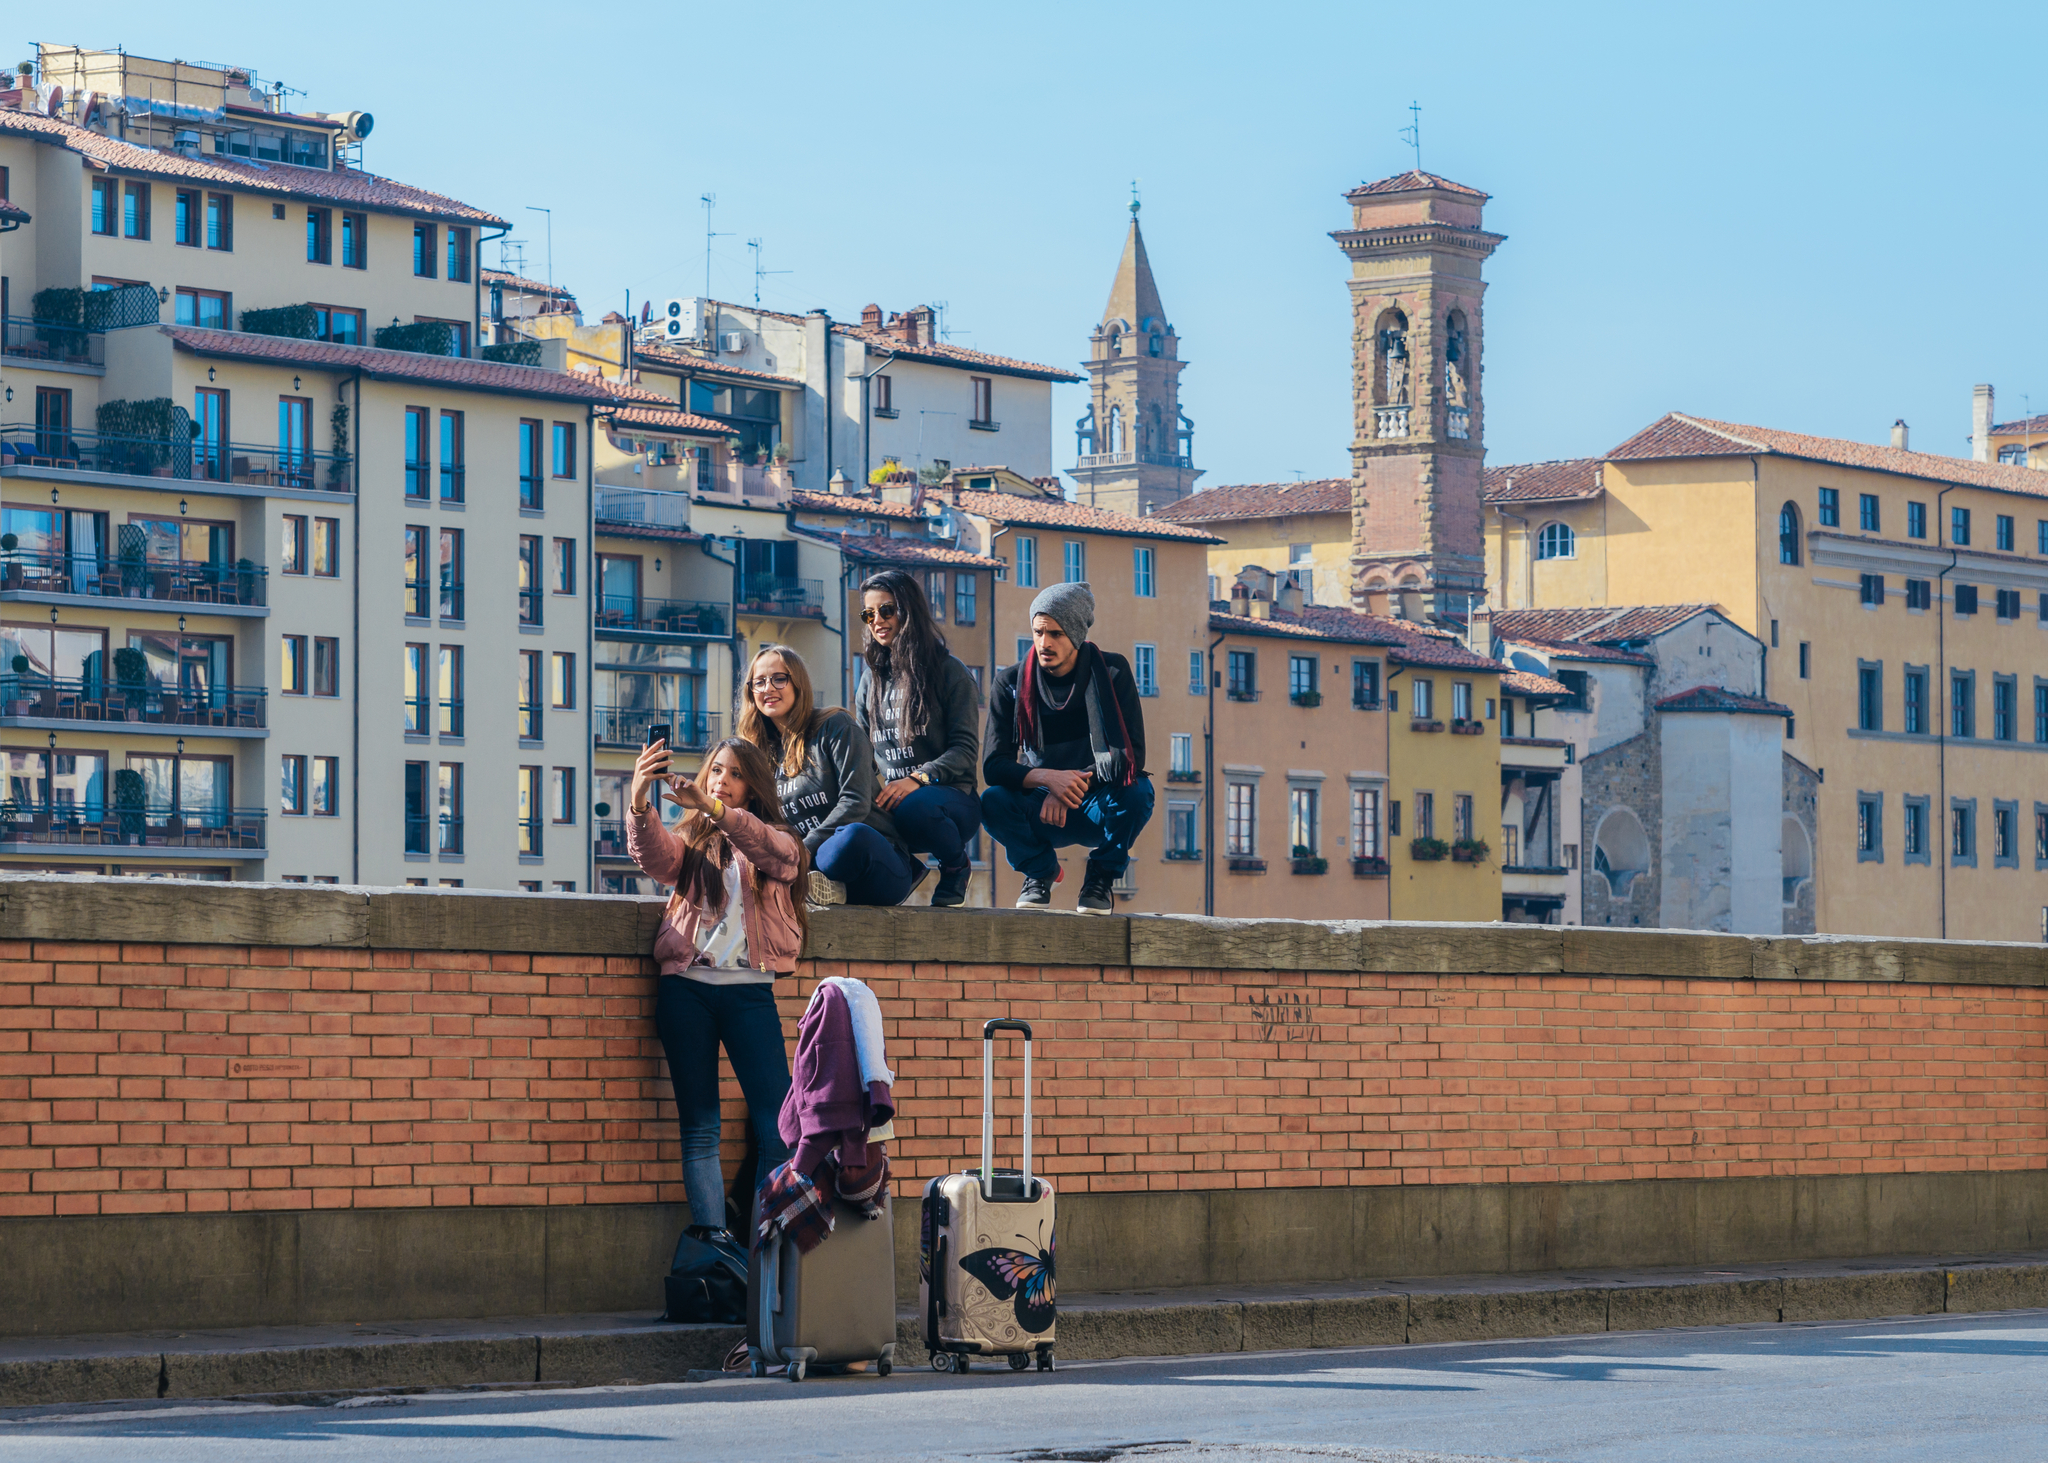 Grup de tineri care își fac un selfie, abia ajunși în Florența, Toscana, Italia. Sursă foto: Dreamstime